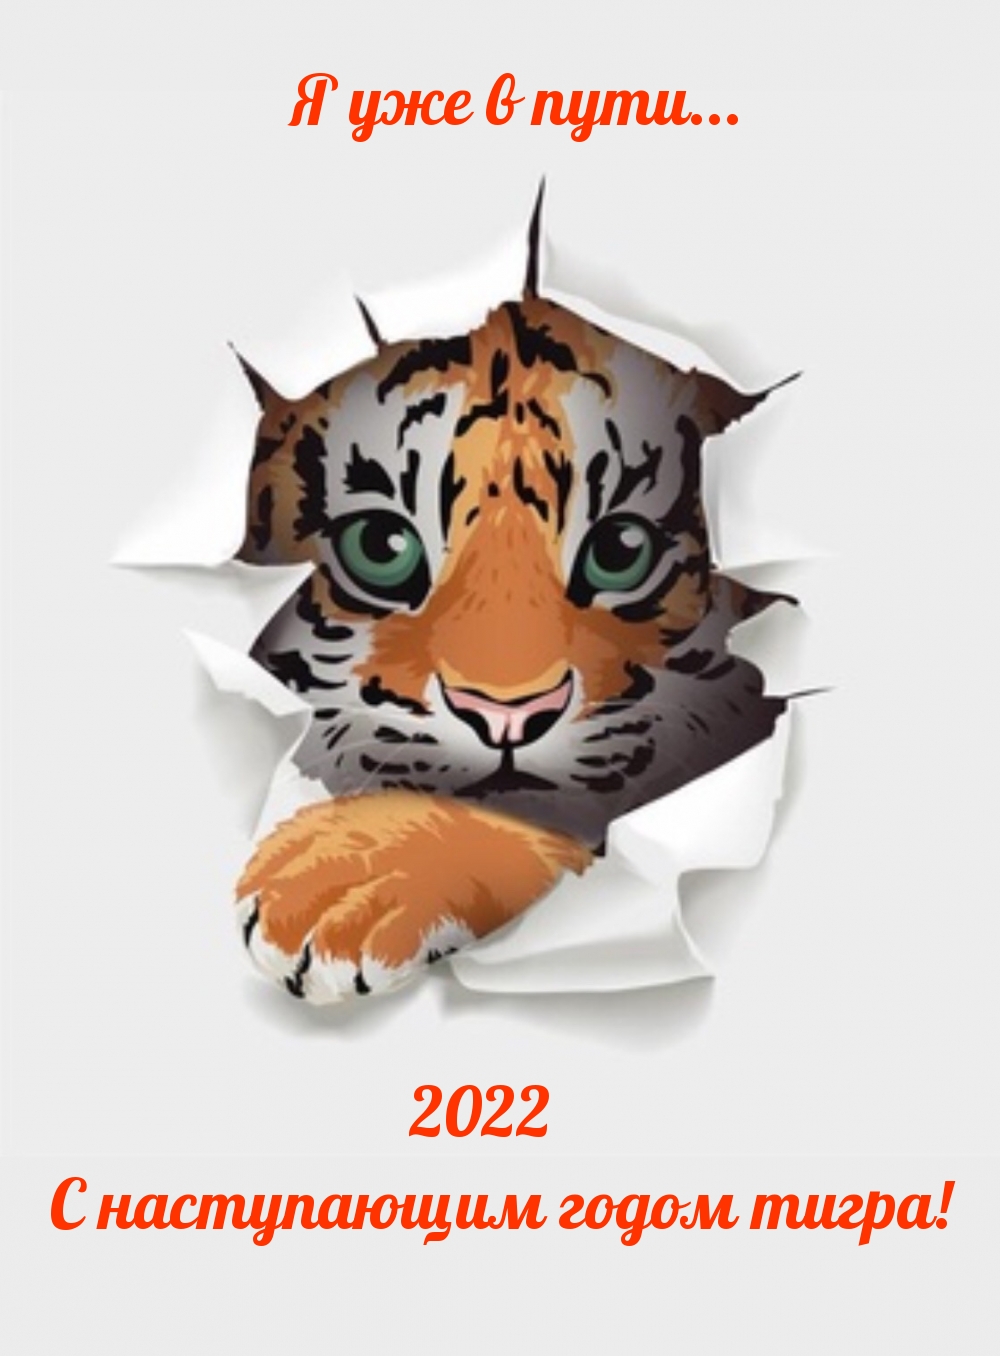    ... 2022    !                     